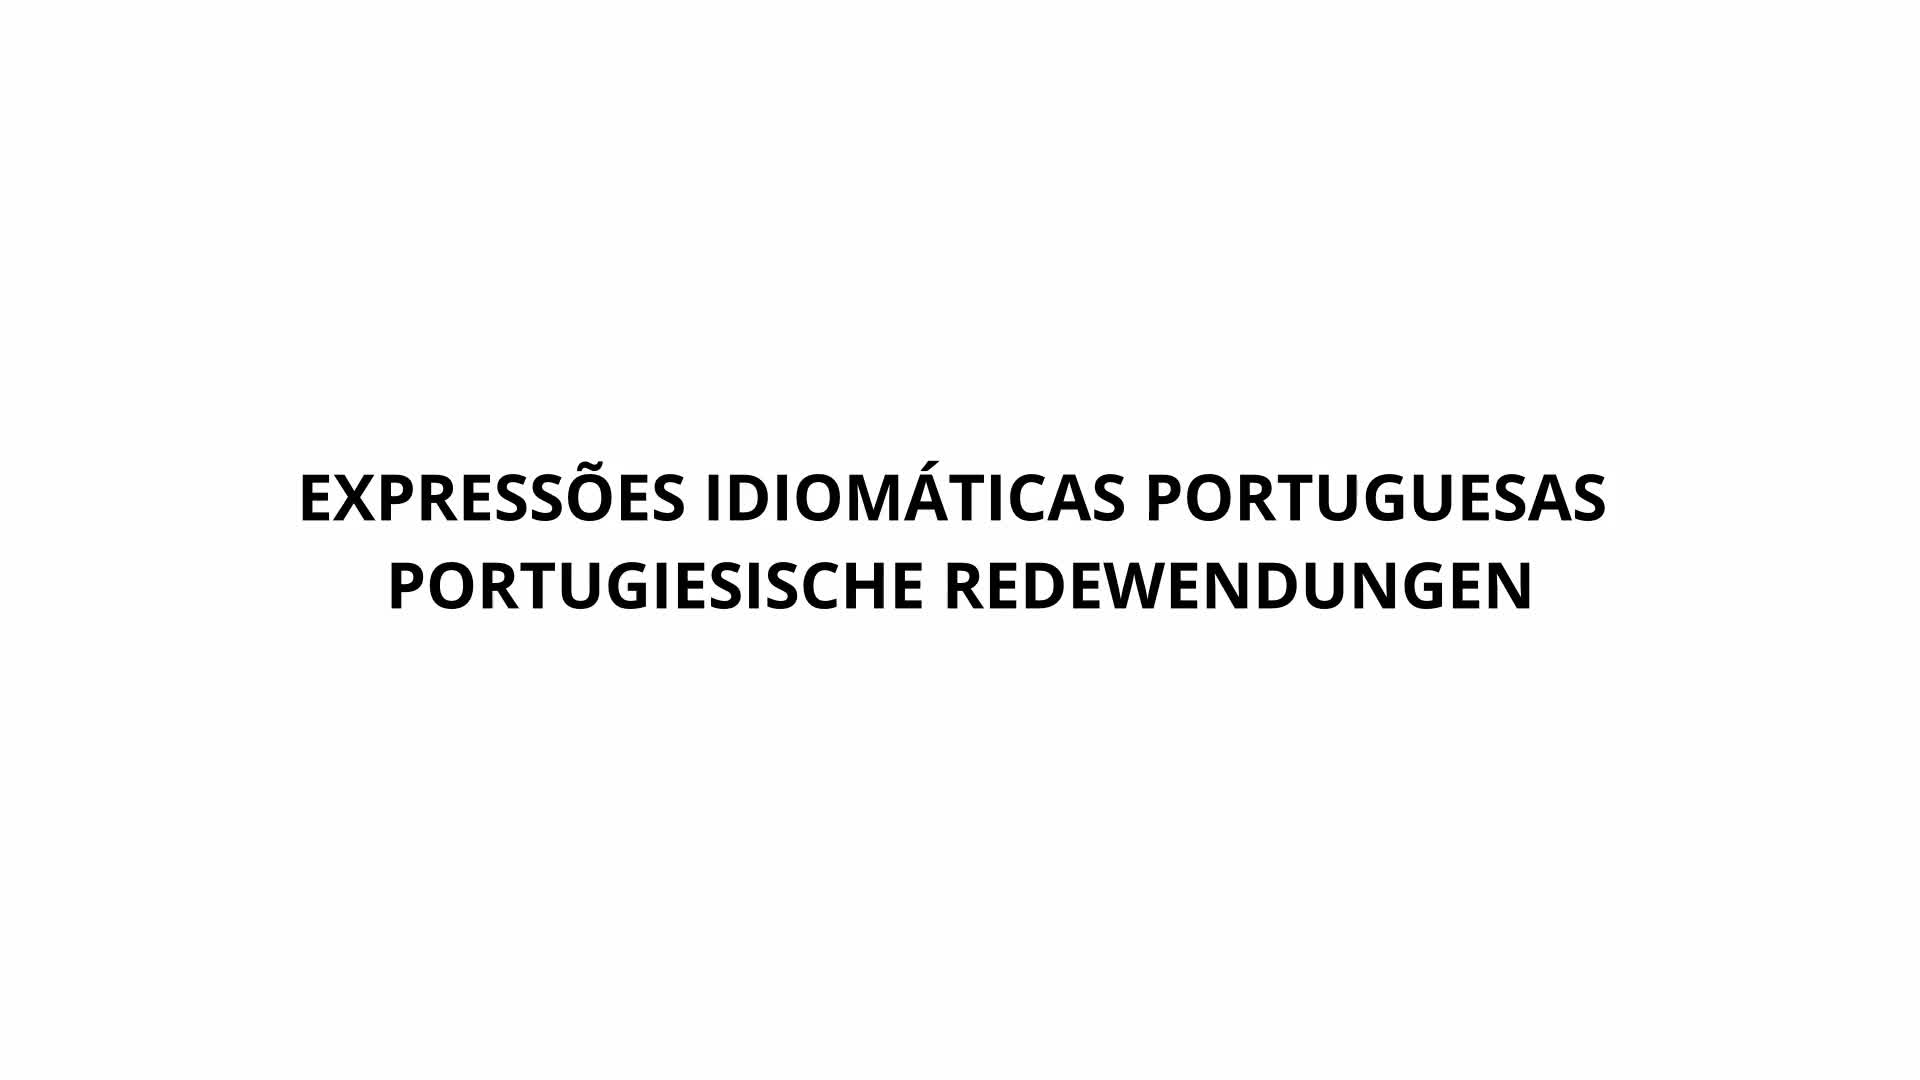 Miniaturansicht - Portugiesische Redewendungen